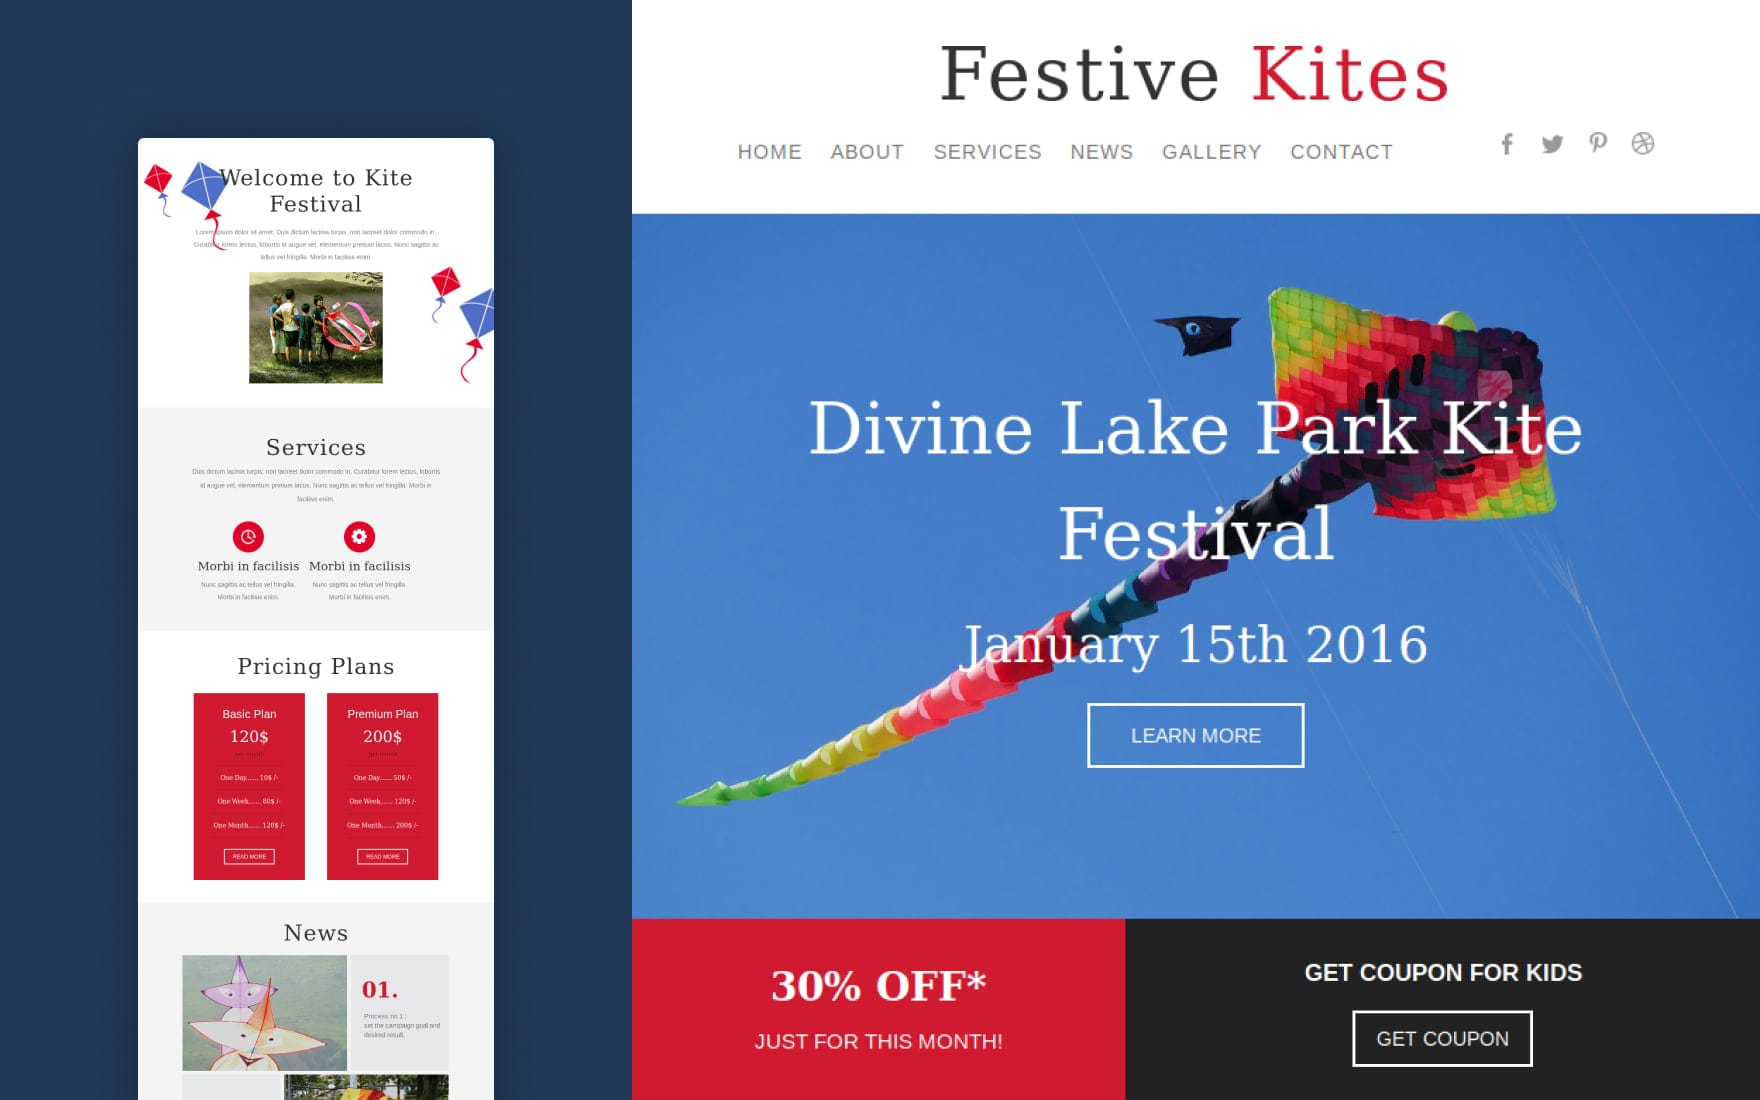 festive kites